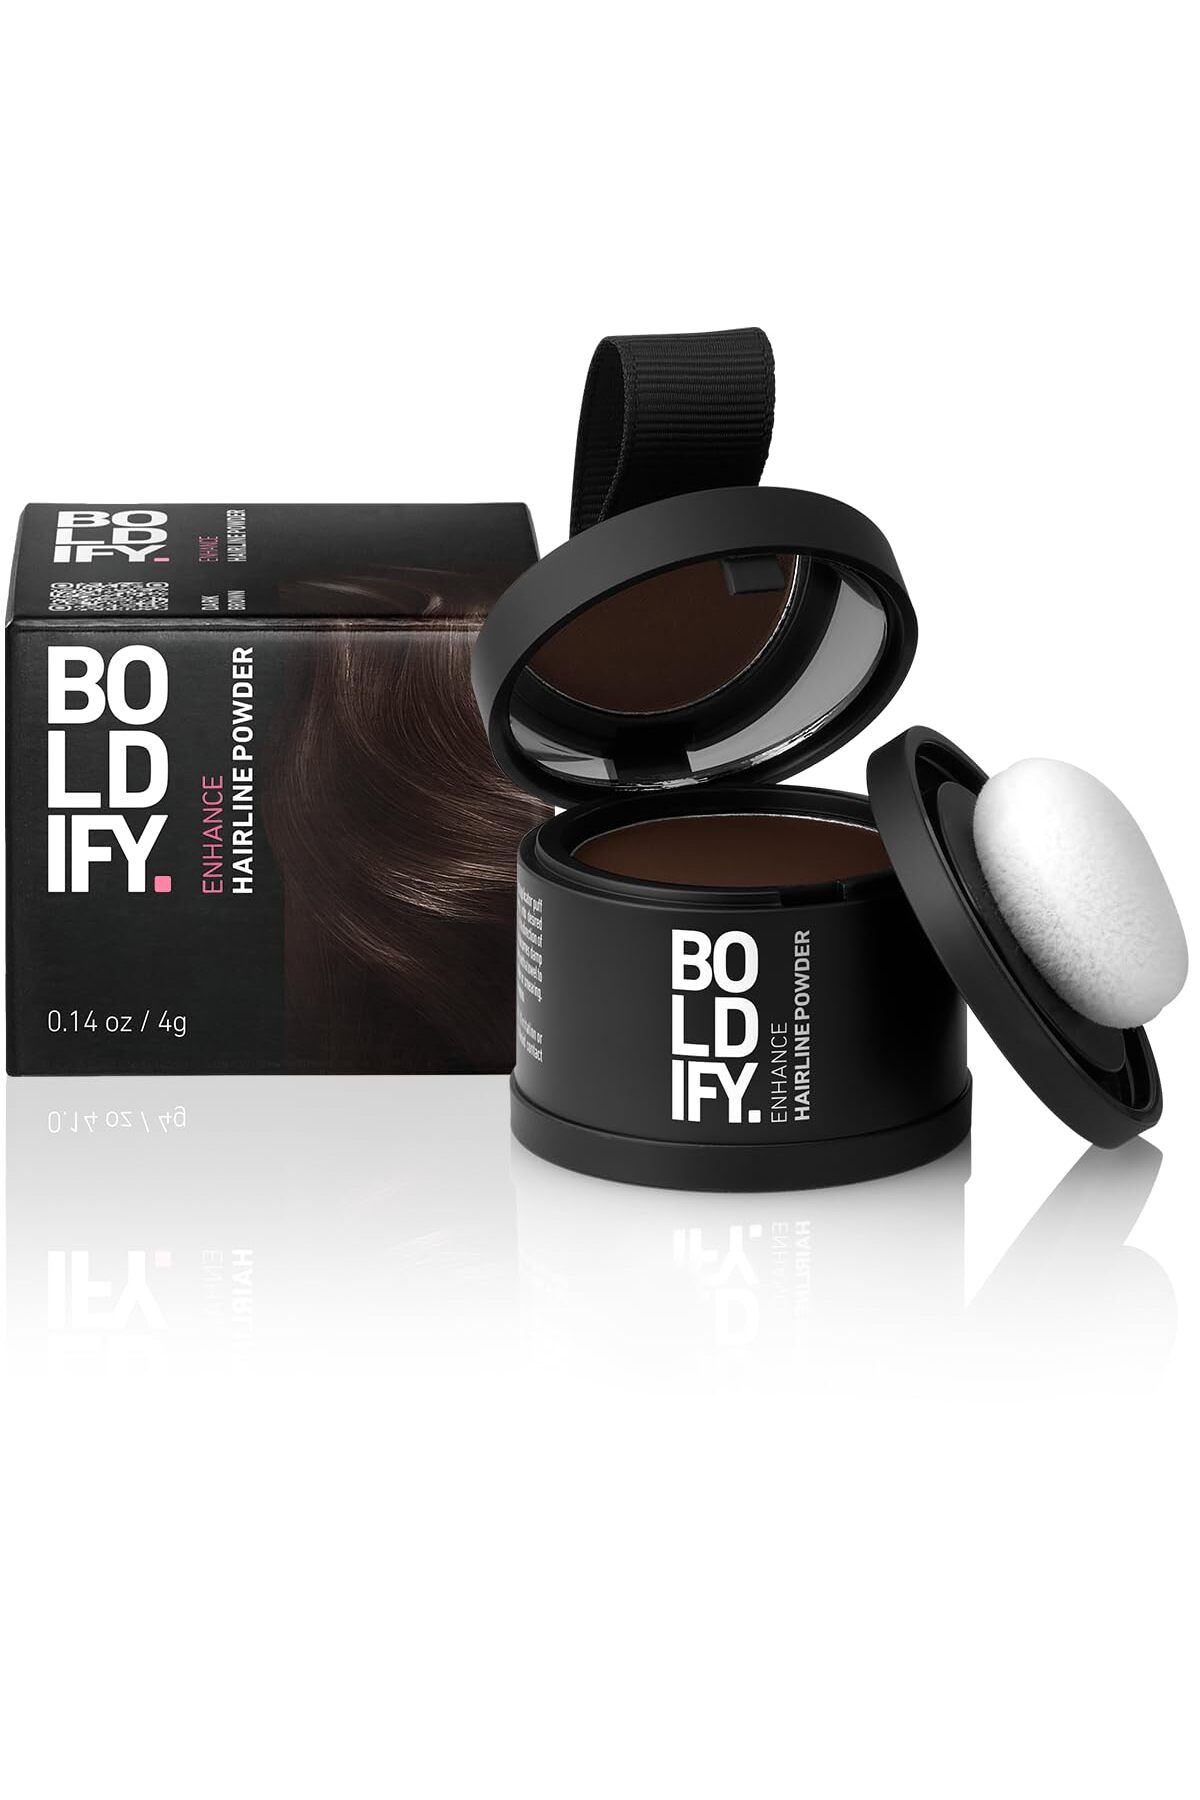 Boldify Saç Tozu Koyu Kahve, Dolgunlaştırıcı Topik Tozu, Saç Dökülmesini Gizler & 48 saat etkili